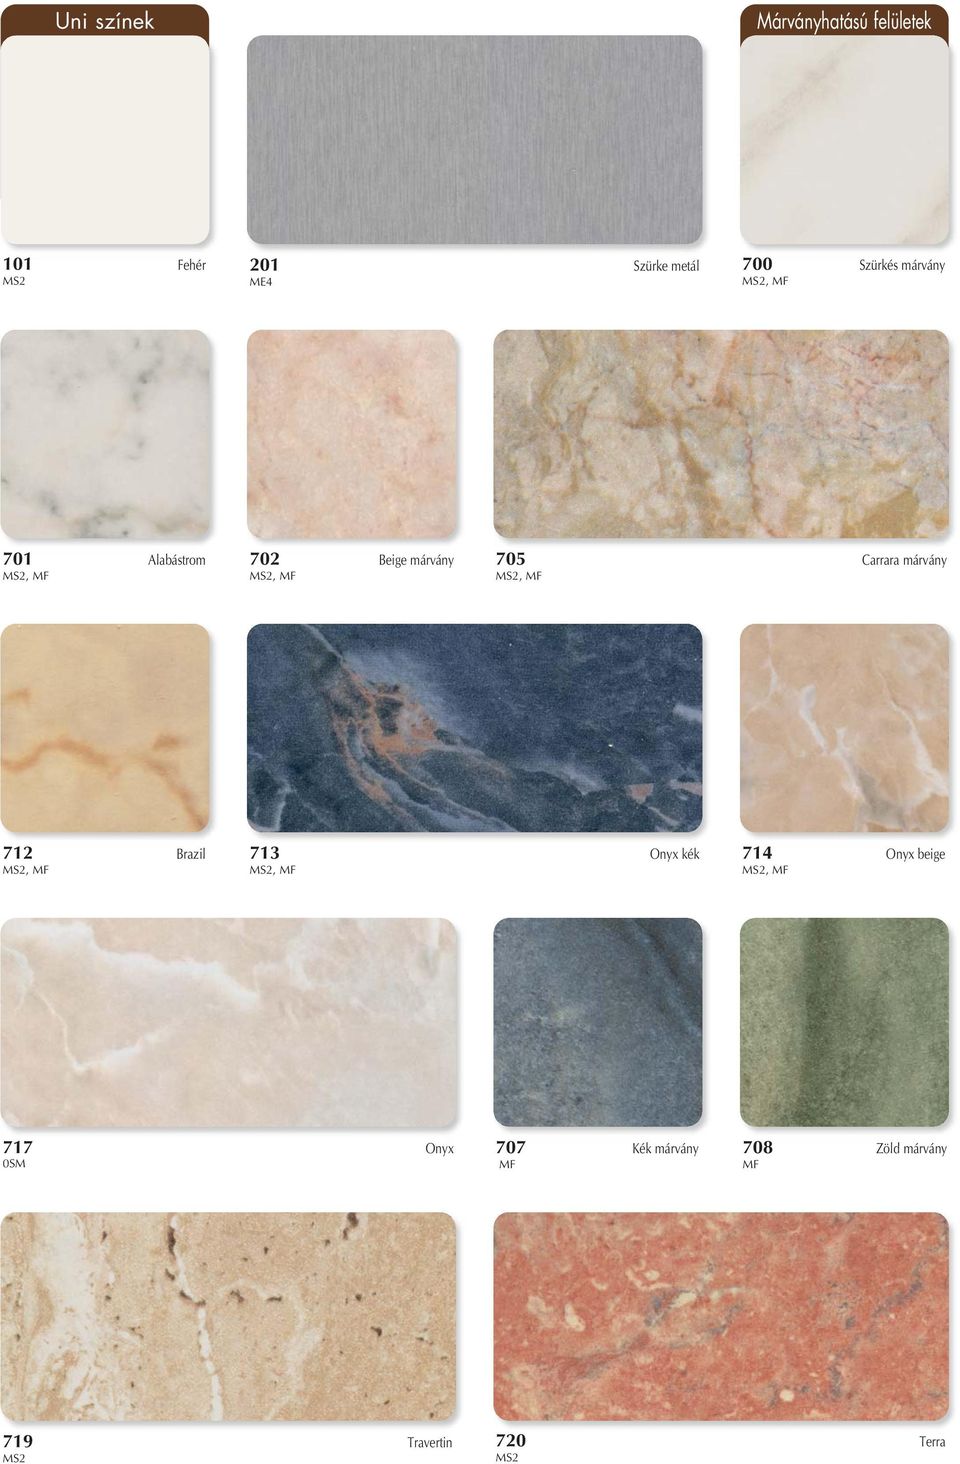 Carrara márvány, 712 Brazil, 713 Onyx kék, 714 Onyx beige,